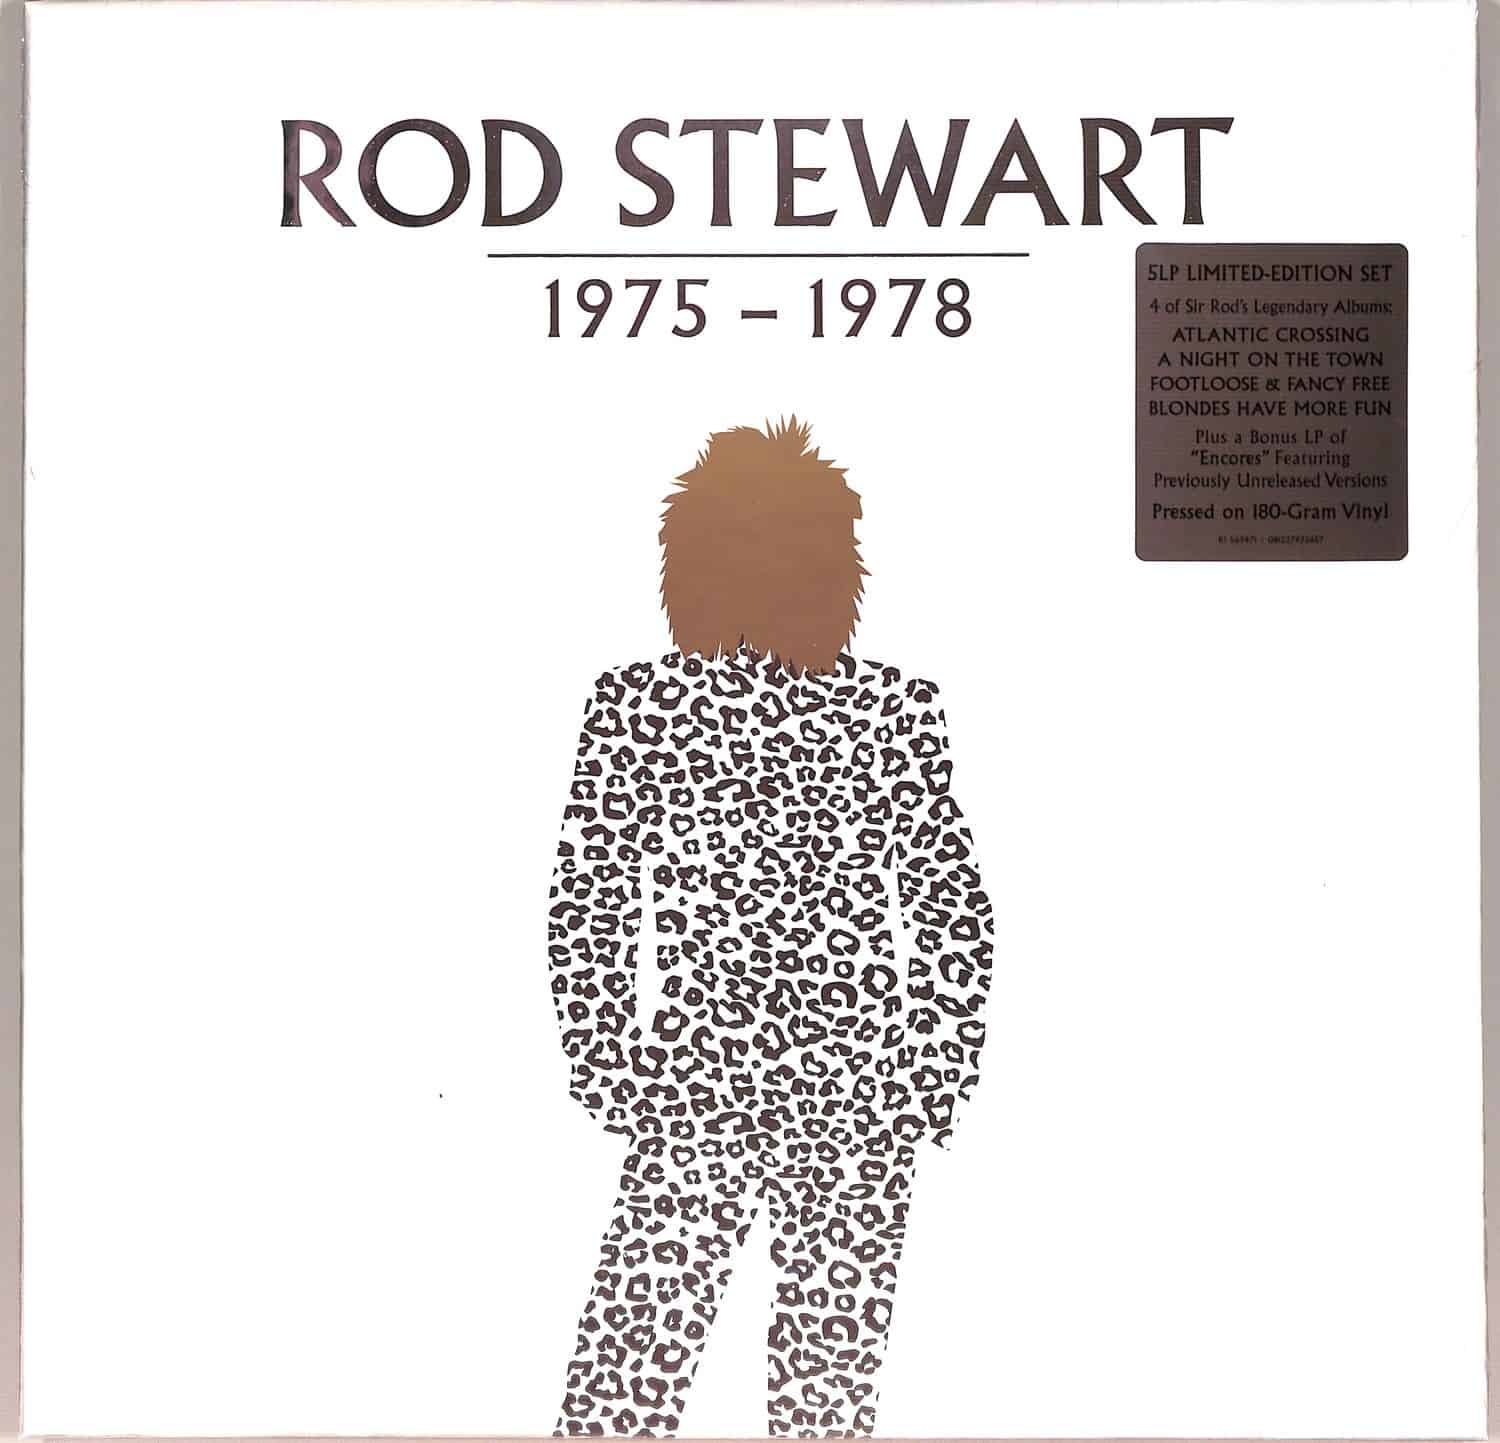 Rod Stewart - ROD STEWART:1975-1978 